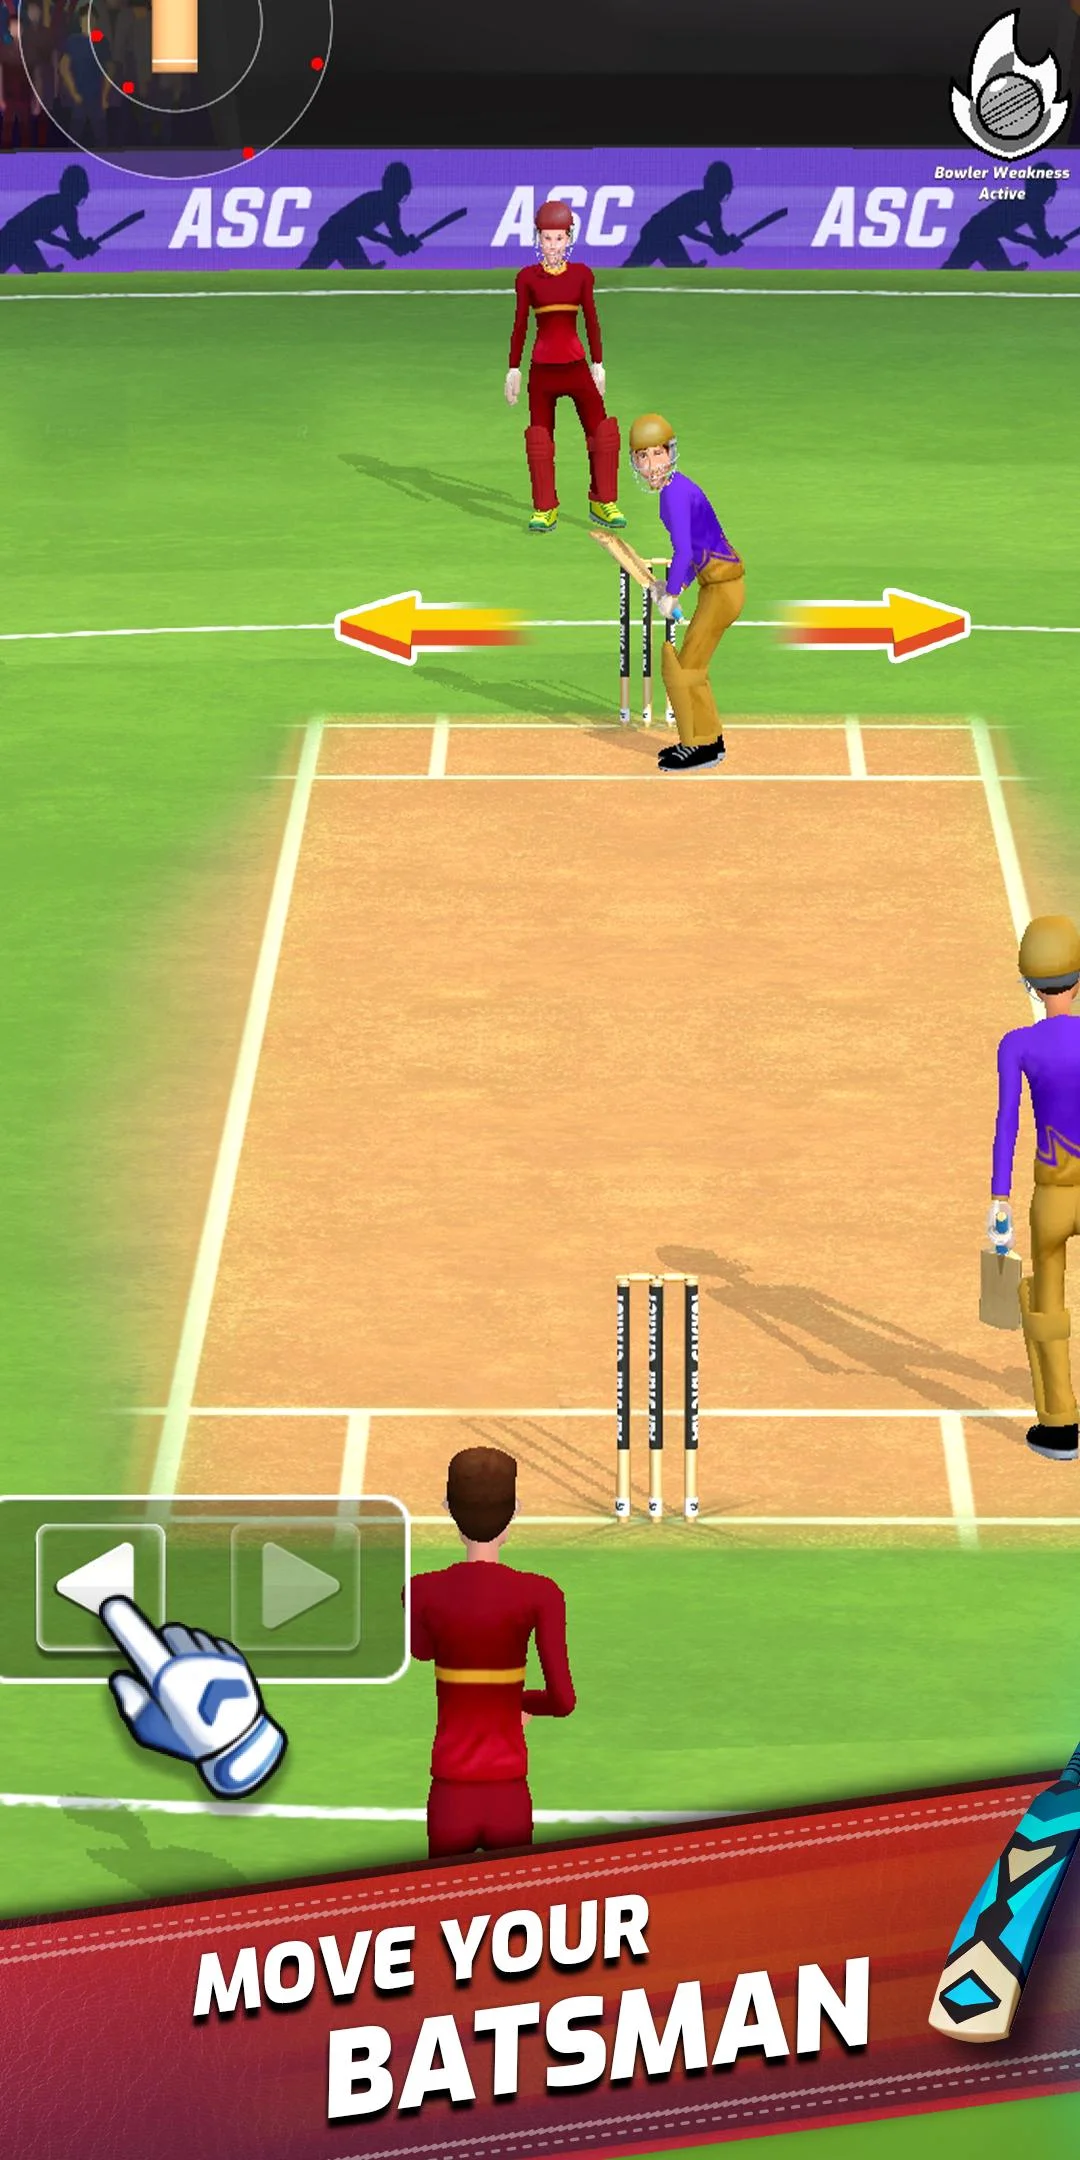 image winudf com screen 2 1 - All Star Cricket Mod Apk V1.0.4 (Unlimited Money)